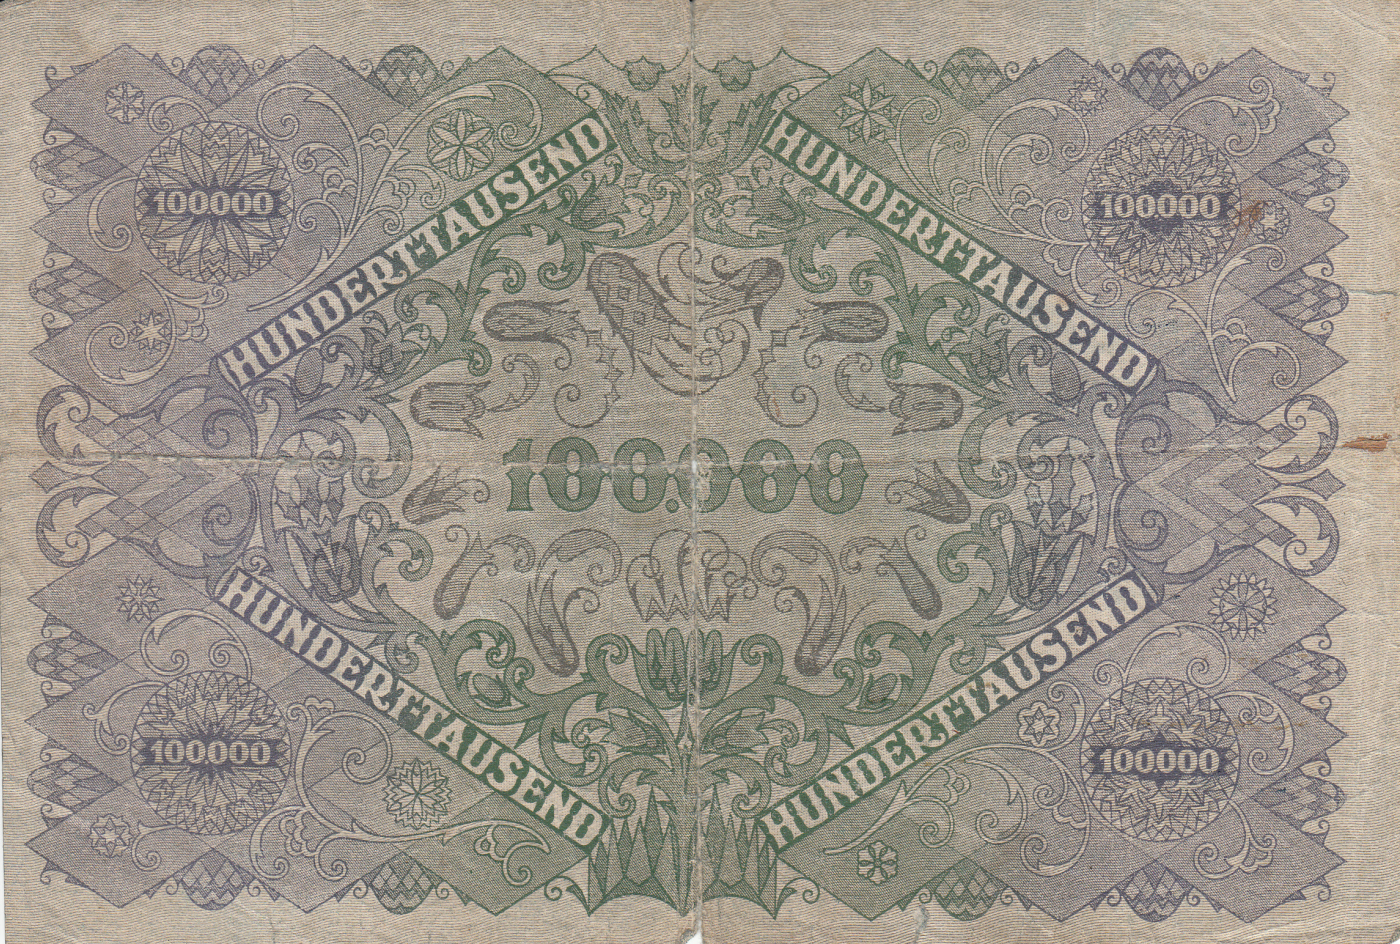 100,000 Kronen 1922 (2. I.), 1922 Issue - Austria - Banknote - 11830